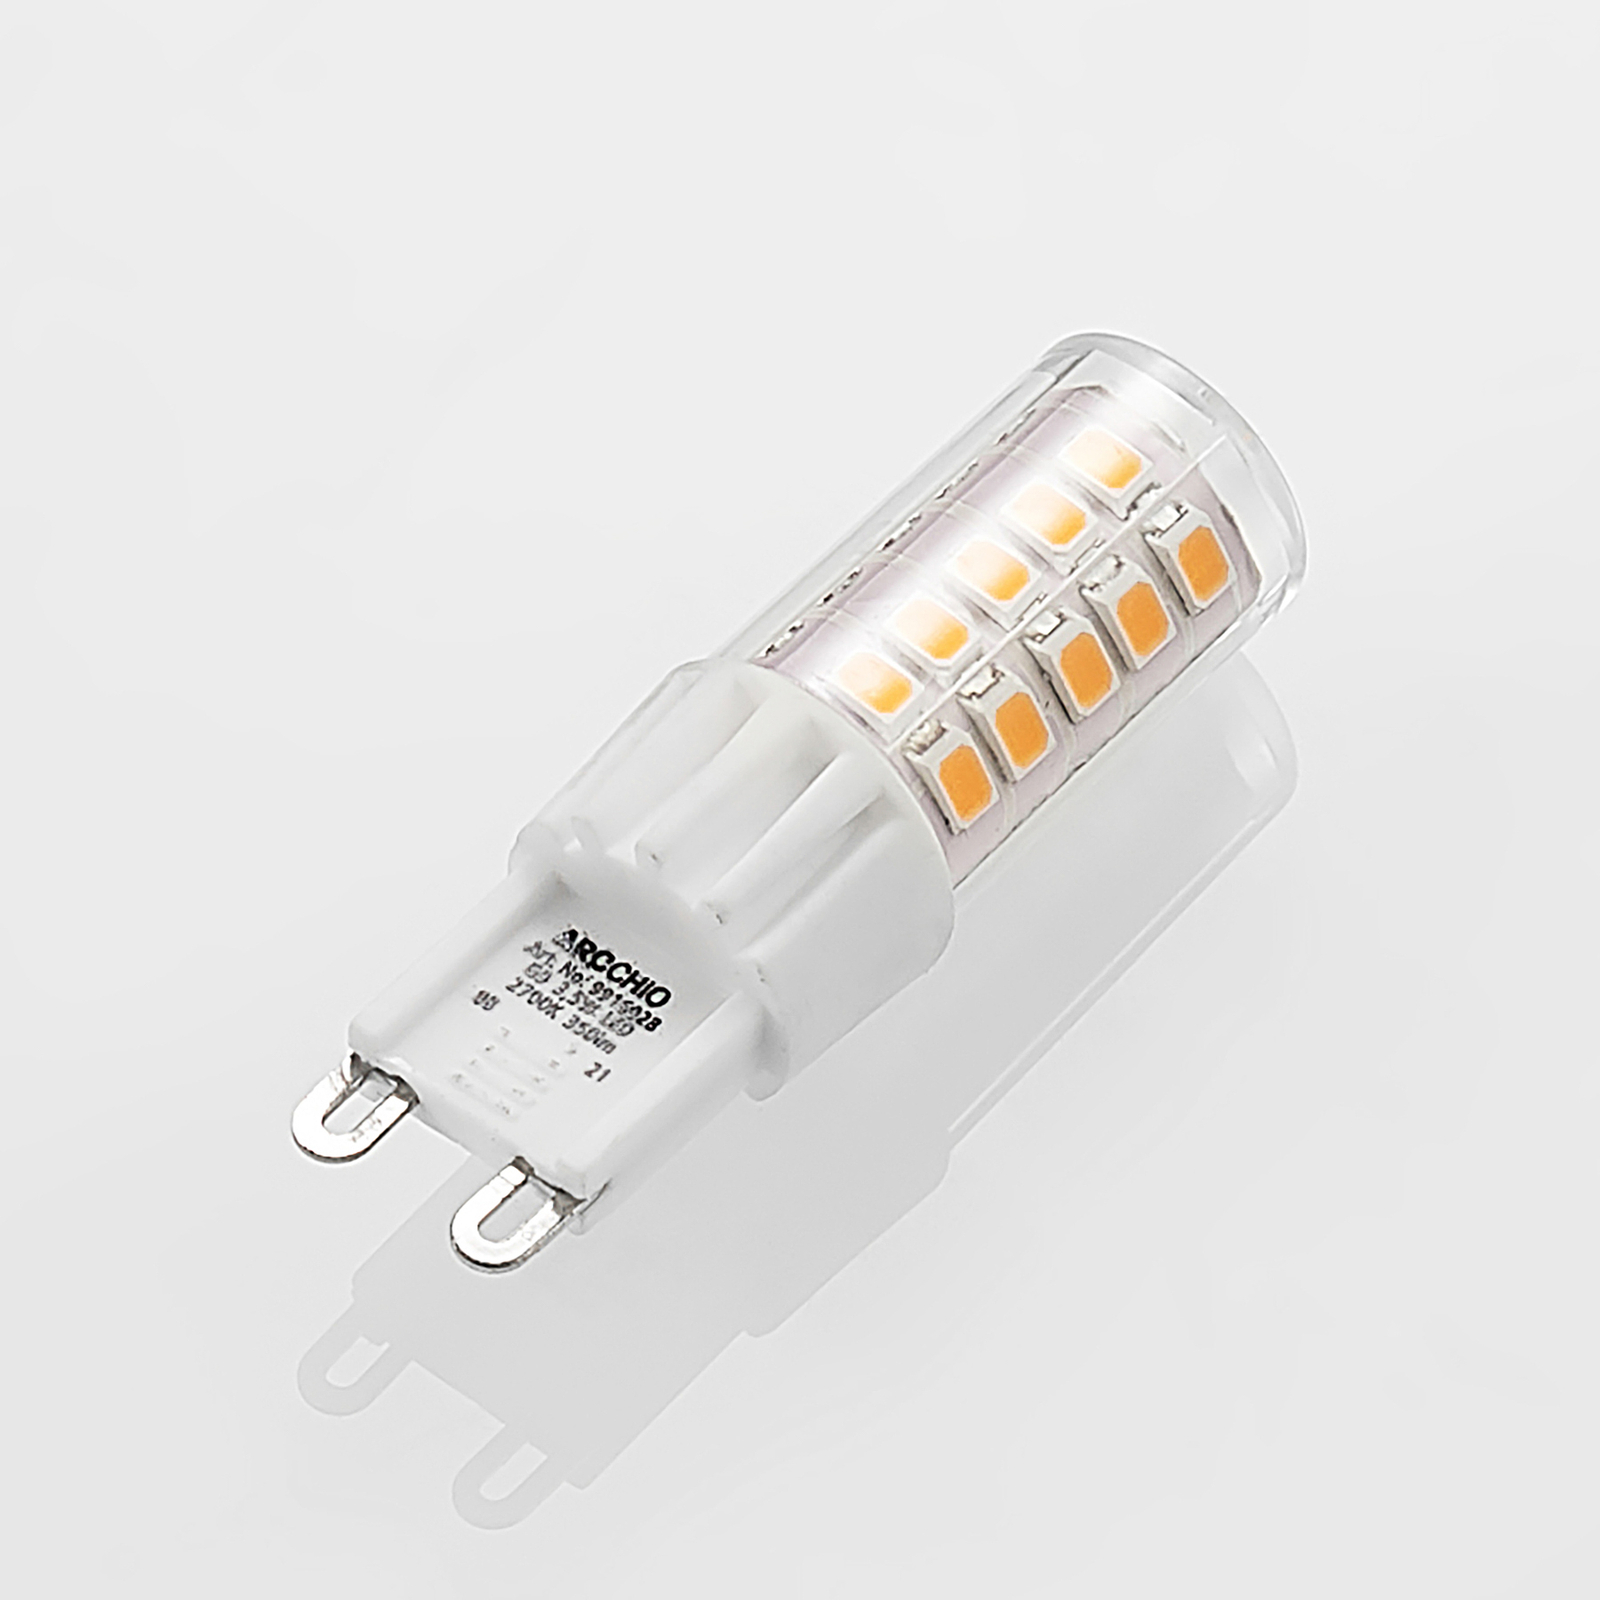 Arcchio LED-Stiftsockellampe G9 3,5W 827 3er-Set